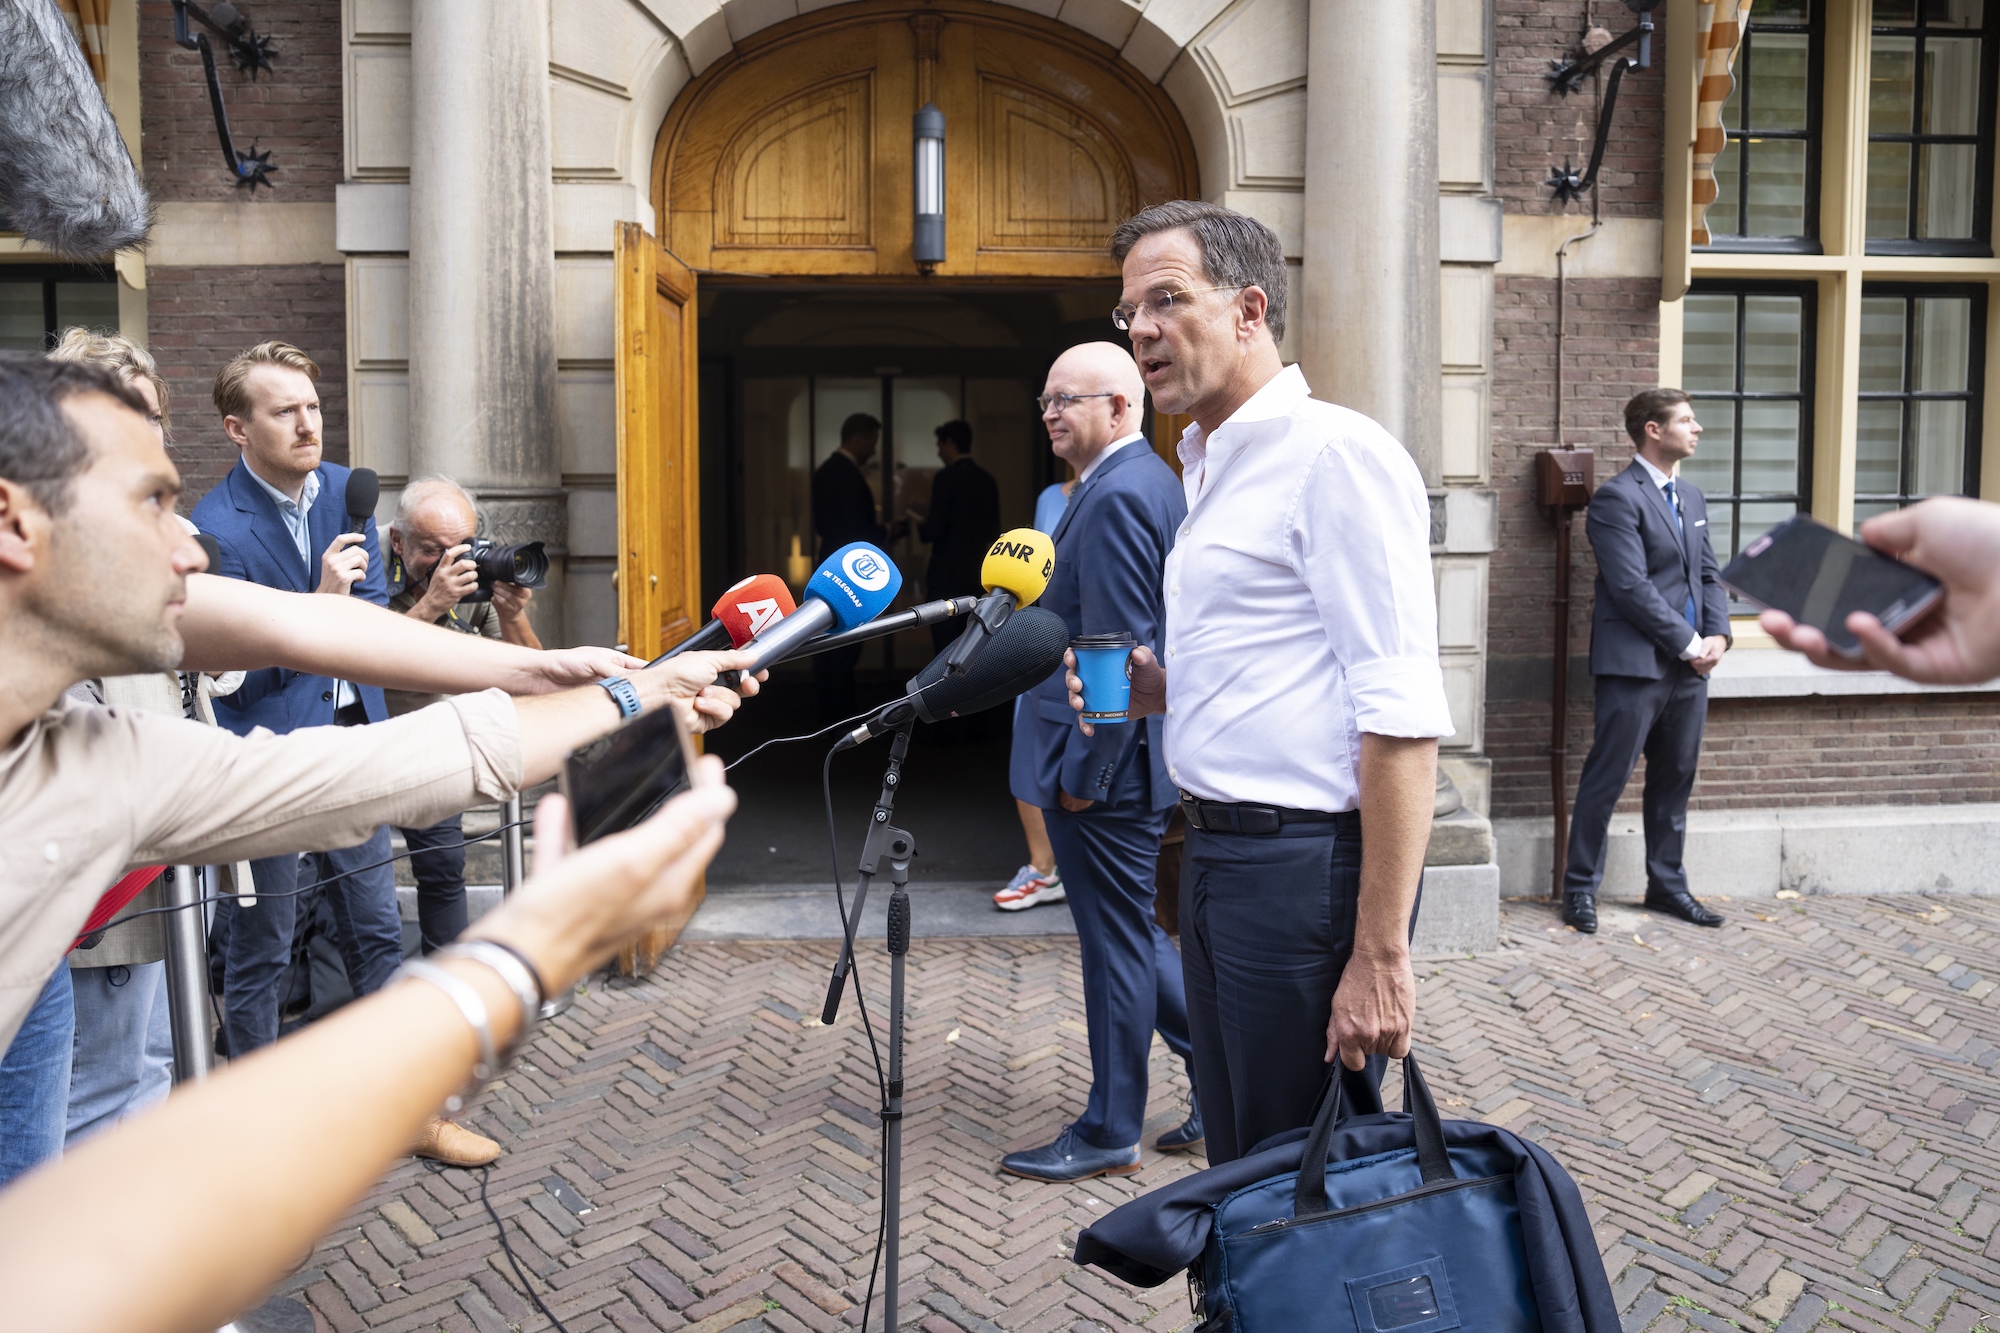 Stikstofuitspraken Hoekstra 'staatsrechtelijk op het randje', vindt Rutte